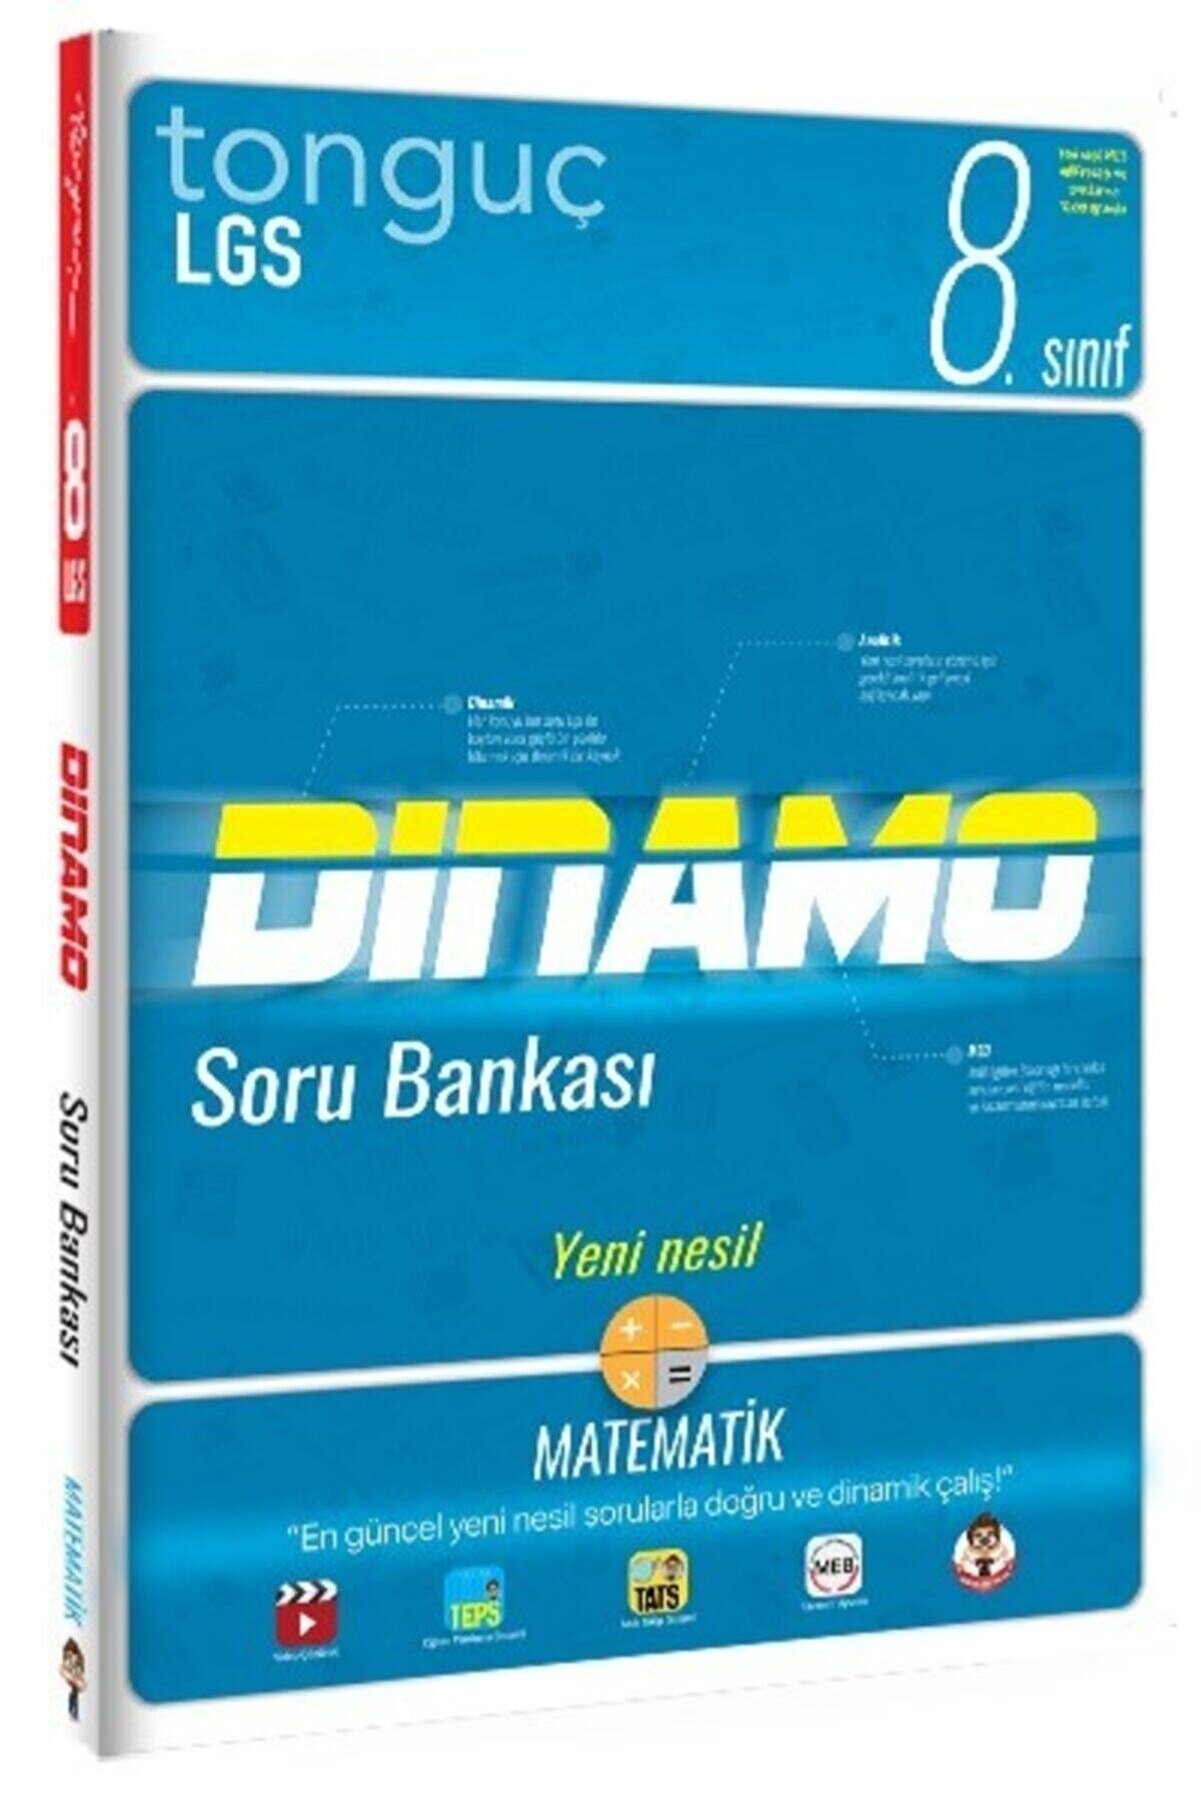 Tonguç Yayınları 8. Sınıf Lgs Matematik Dinamo Soru Bankası